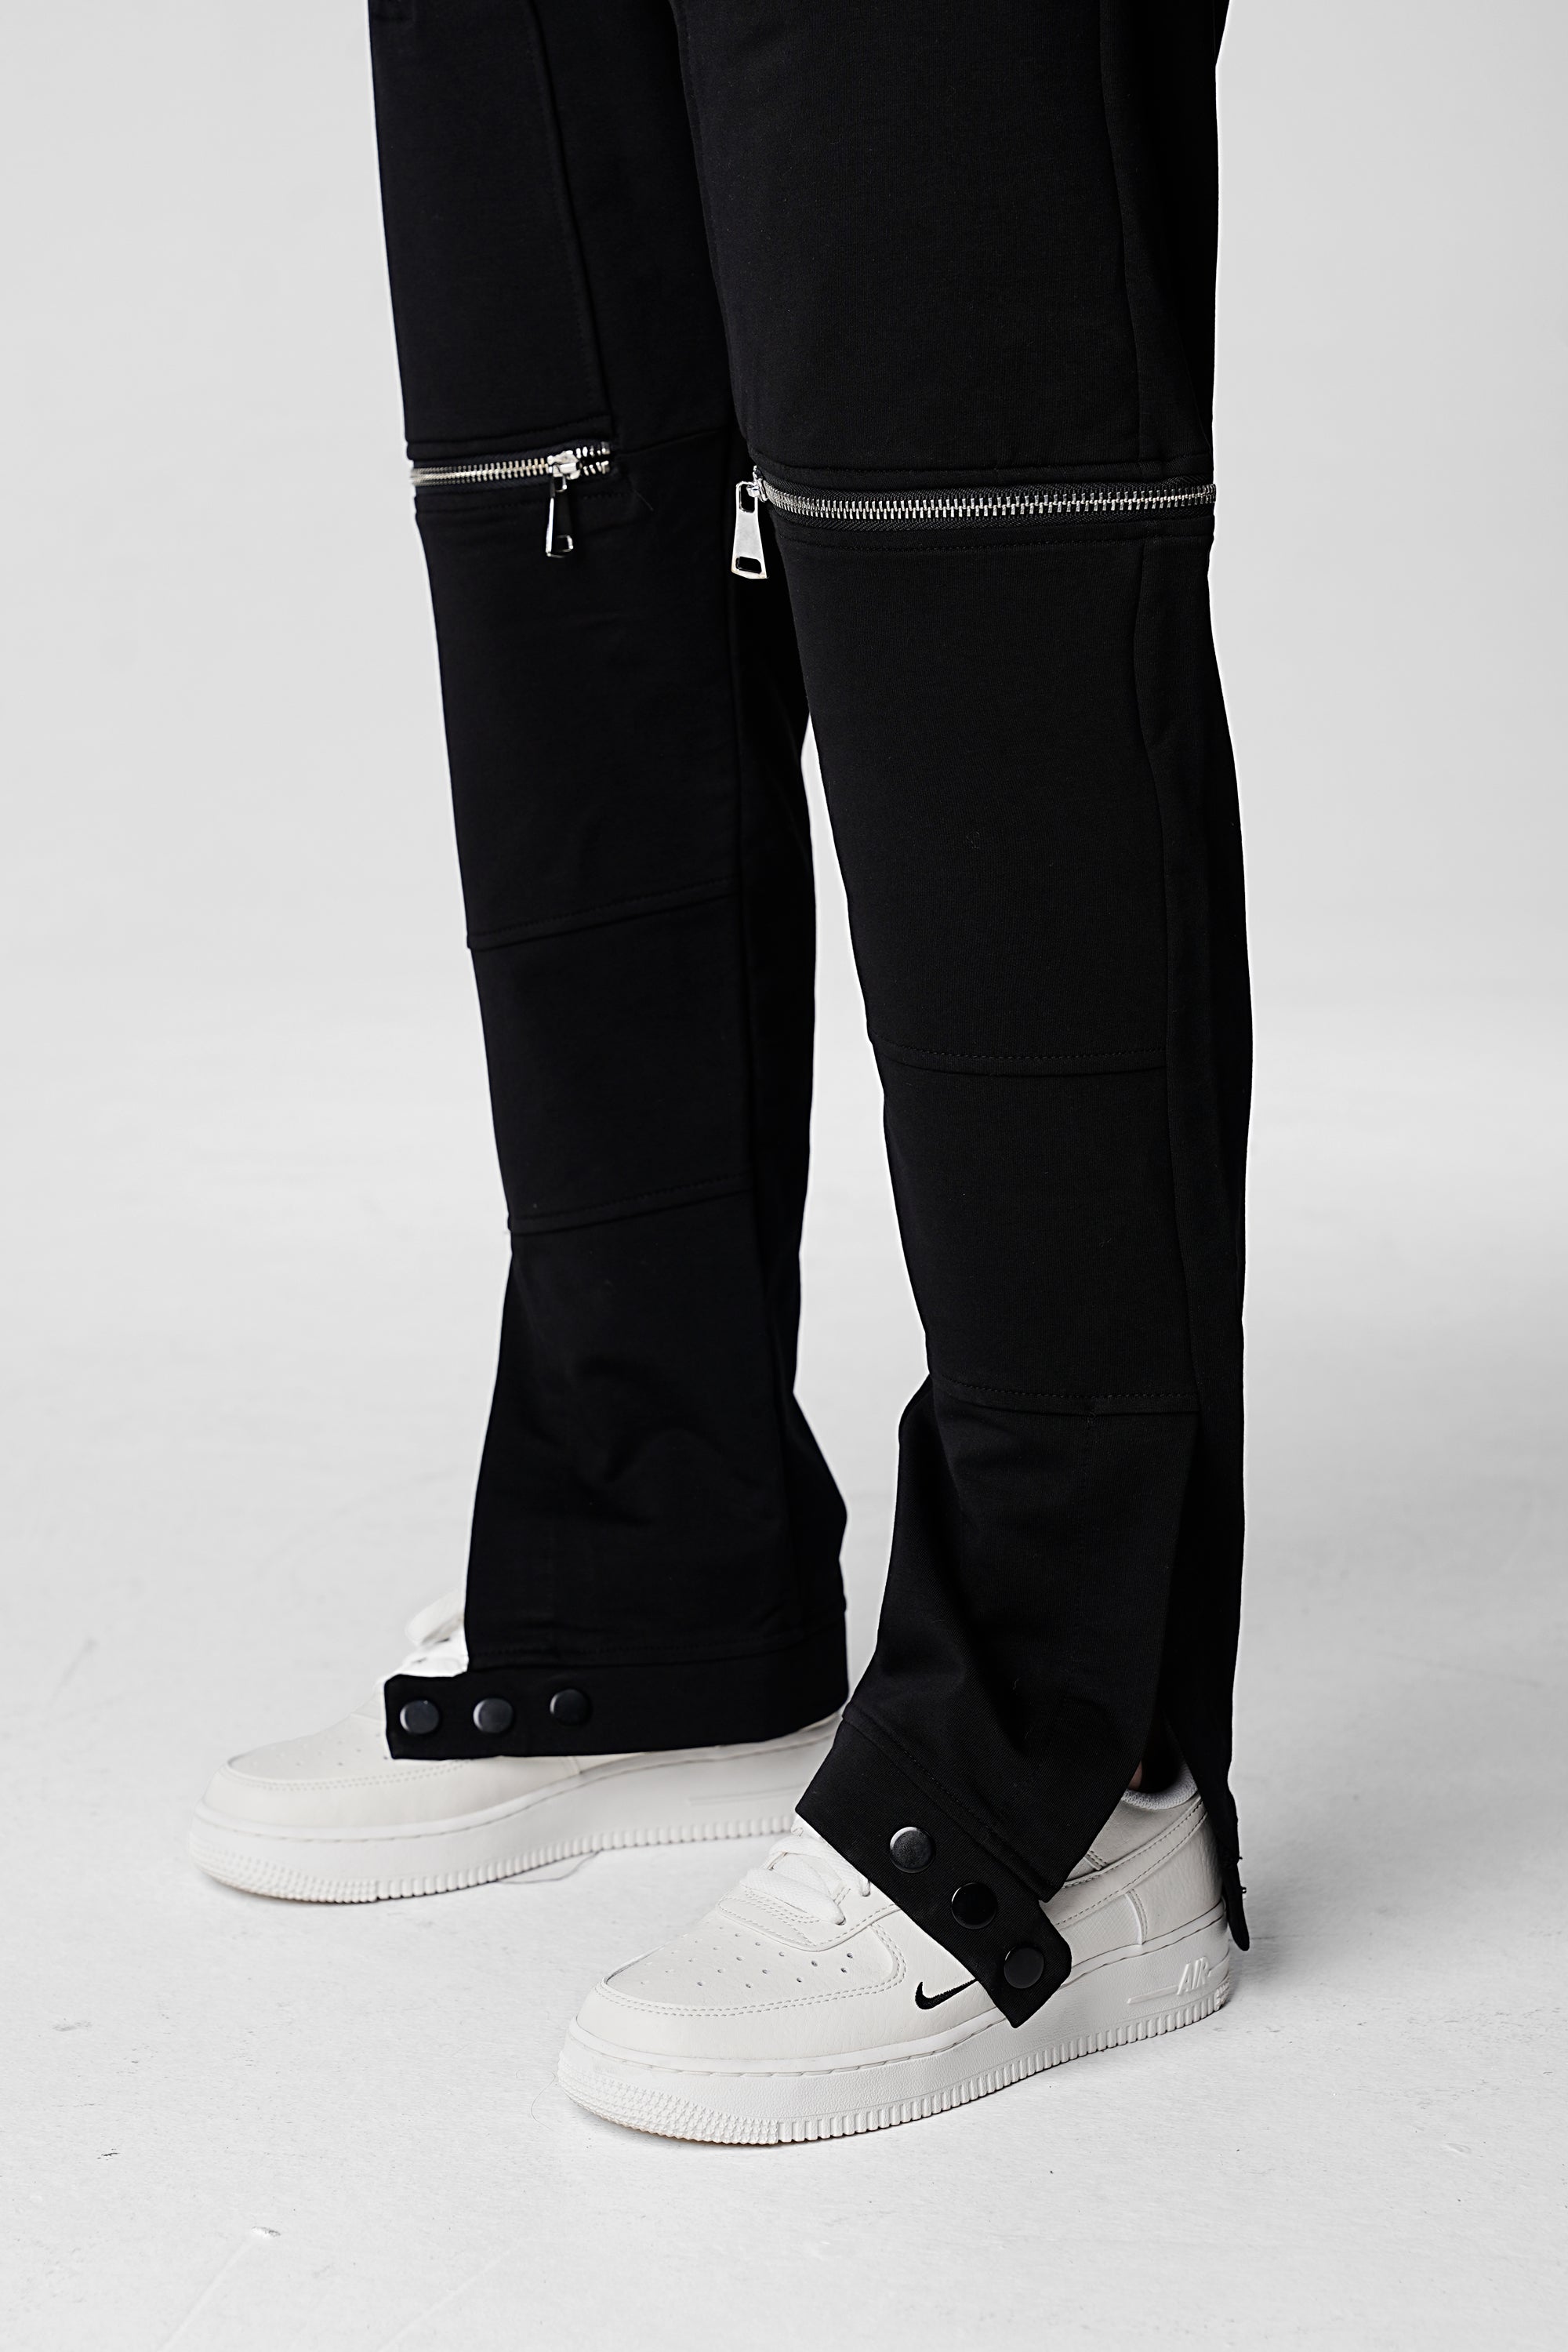 Regular Fit Premium Glory Pants - Black - UNEFFECTED STUDIOS® - CARGO PANTS - UNEFFECTED STUDIOS®